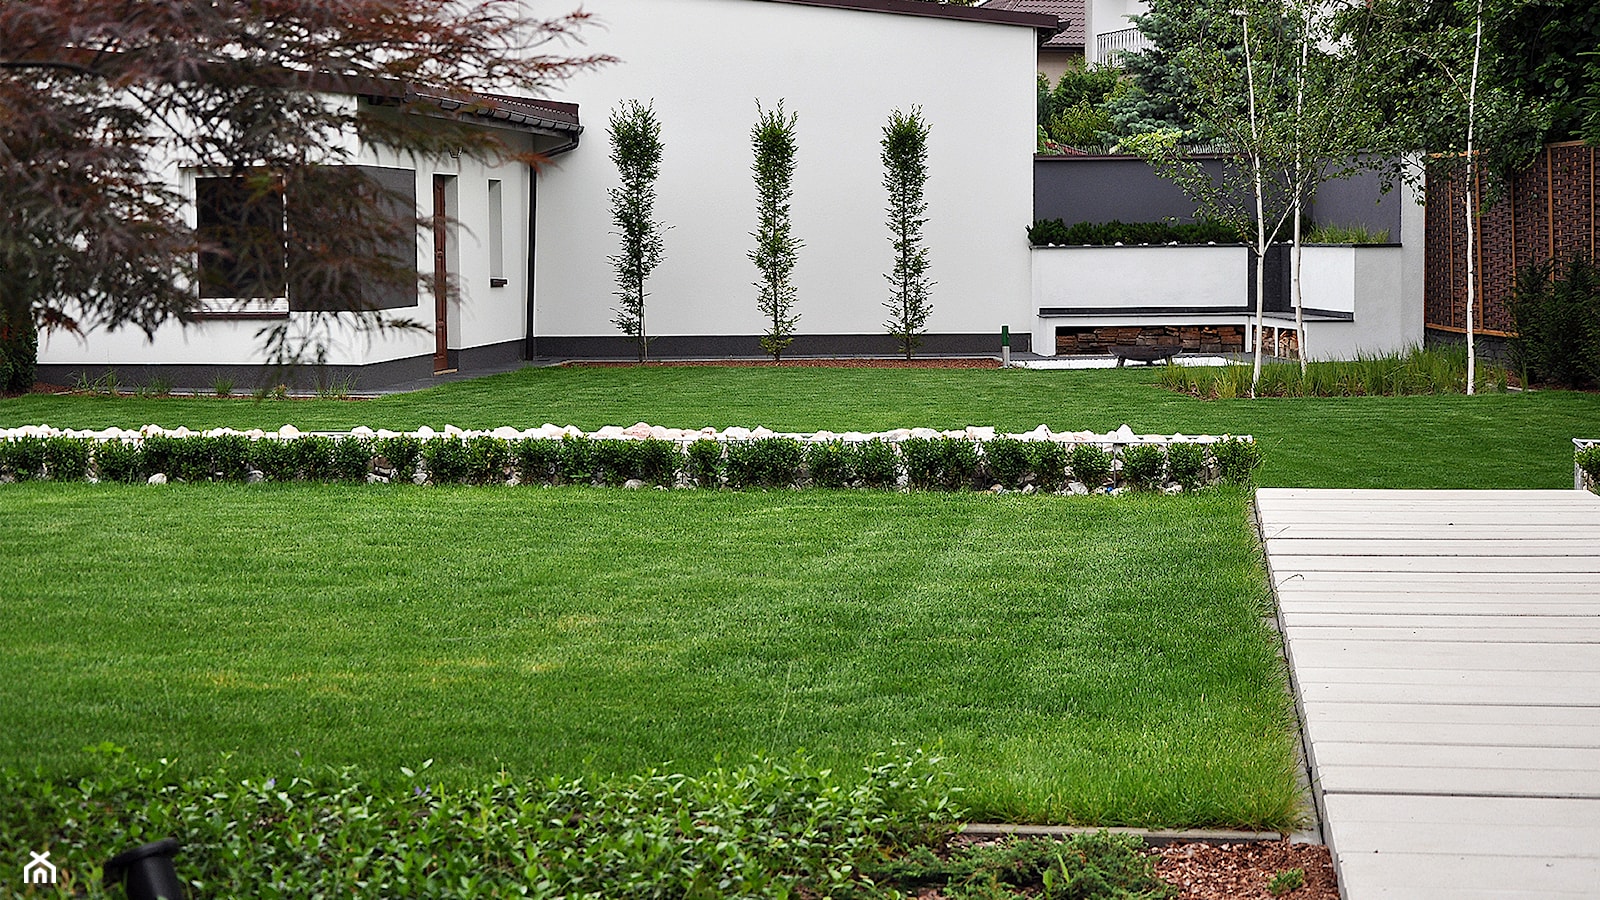 OGRÓD PRZYDOMOWY W WARSZAWIE - Duży ogród za domem, styl nowoczesny - zdjęcie od Line Design - Homebook